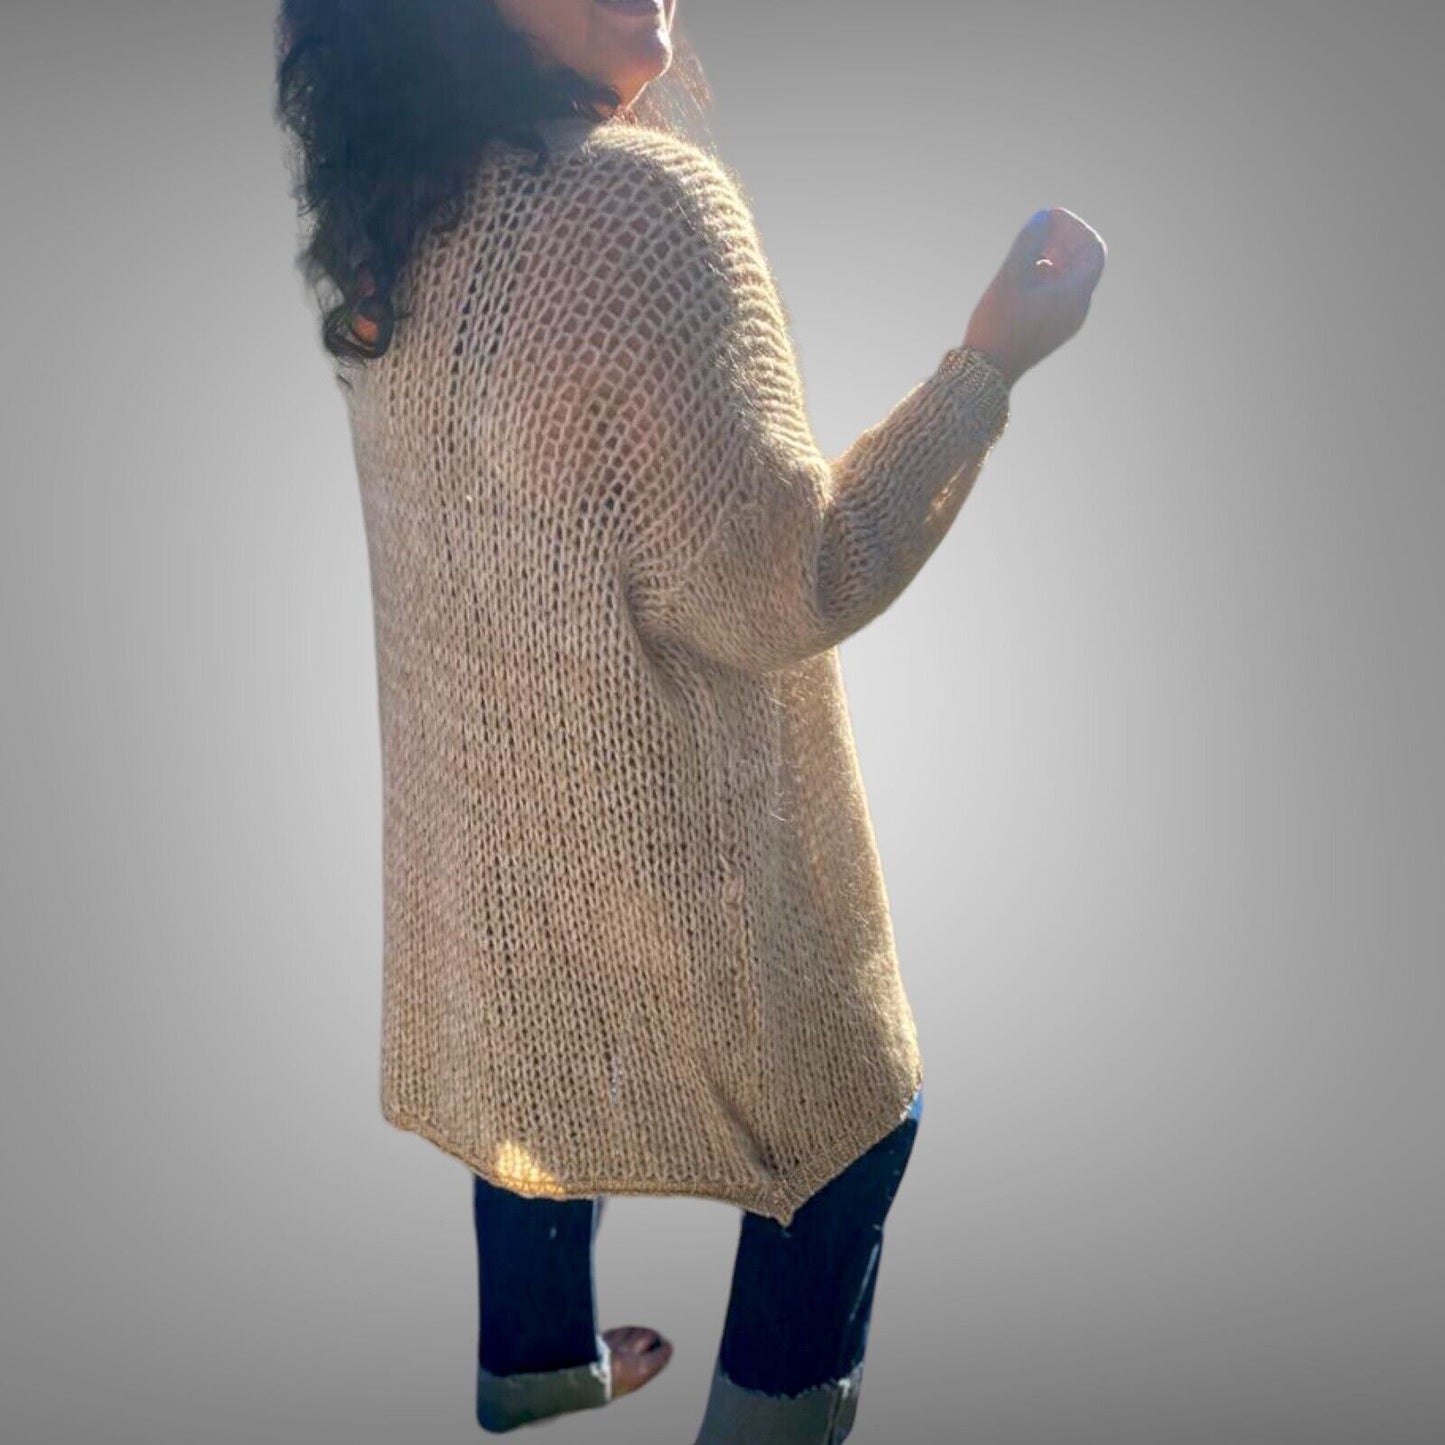 Stilvolle Wärme für alle Größen: Damen Strickjacke Cardigan aus der neuen Kollektion – Modische Inspiration in Onesize (38-46) für einen einzigartigen Style! - Boutique in Heaven